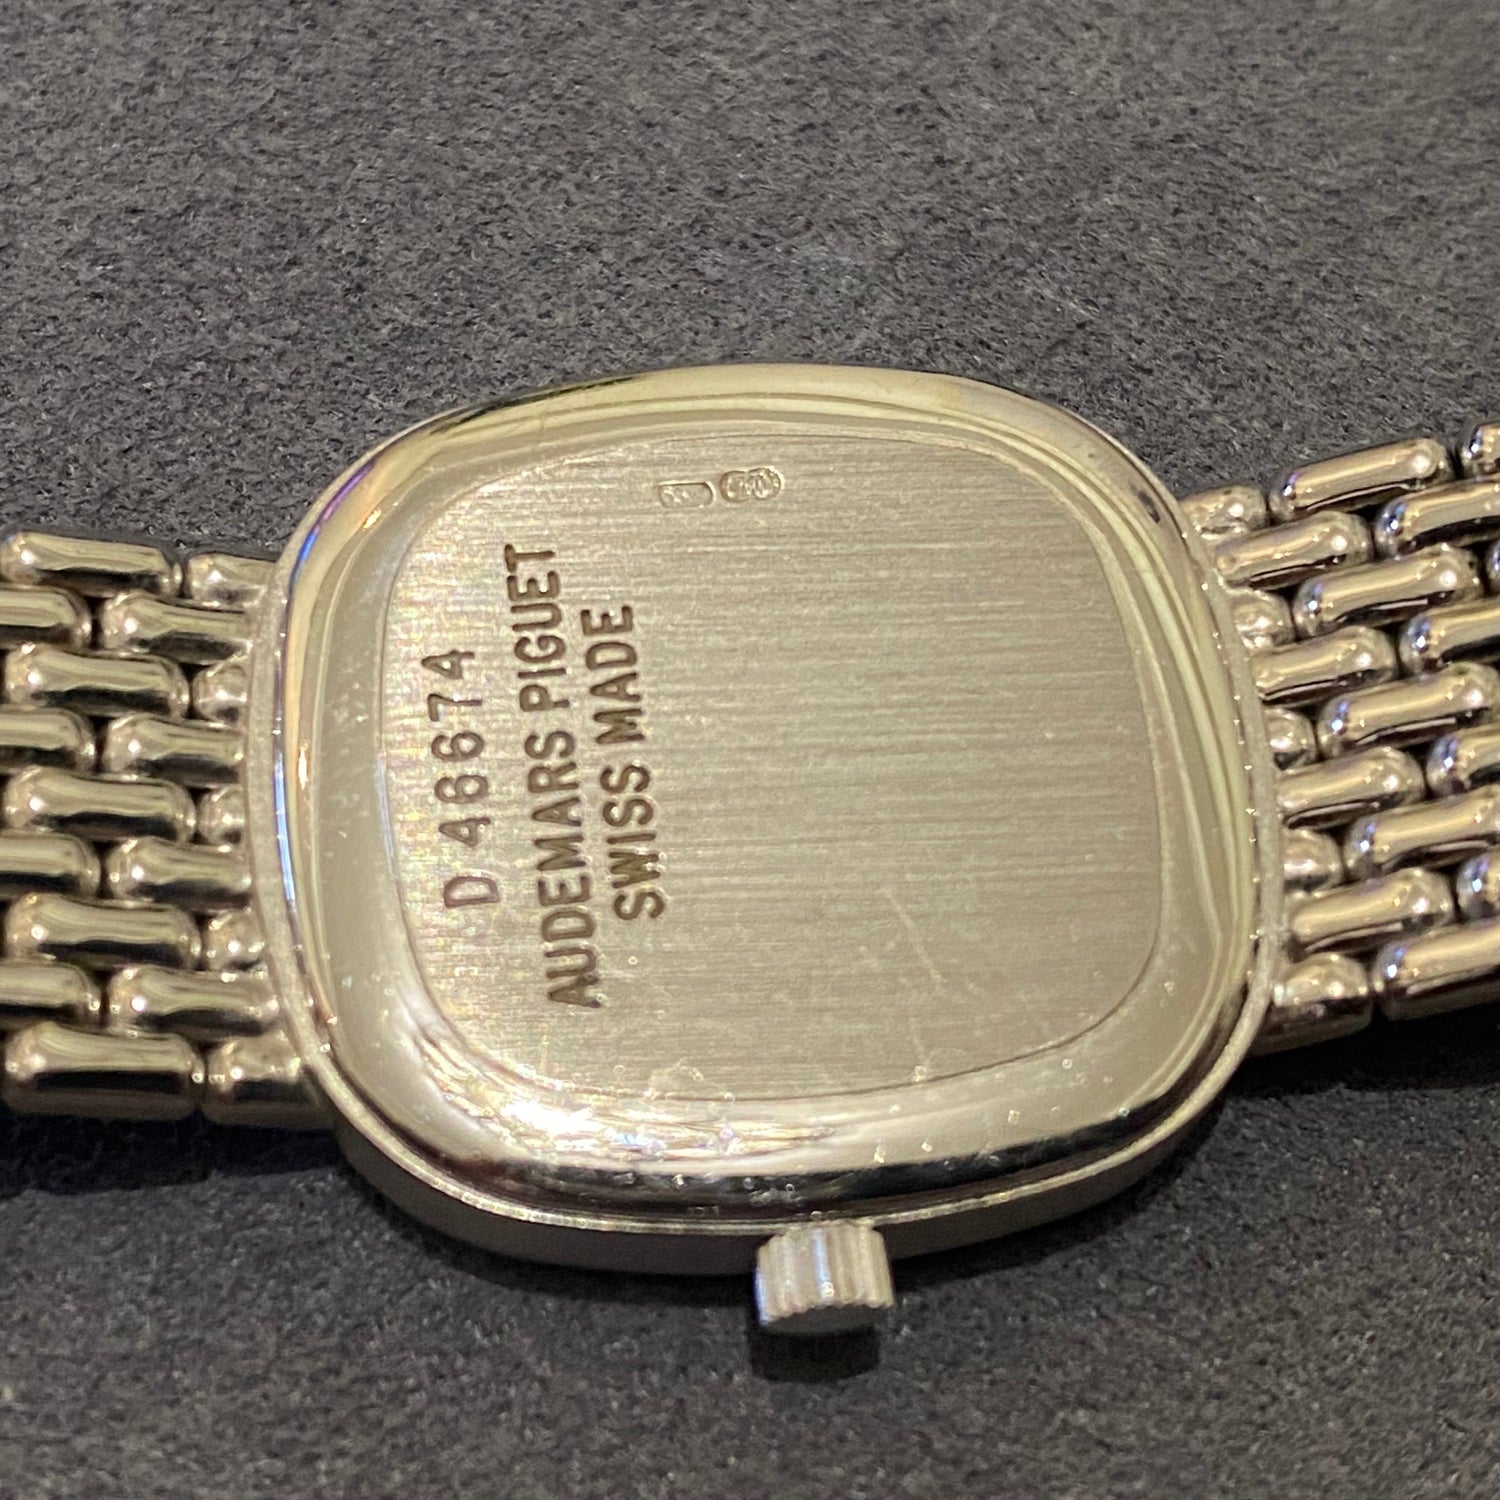 Audemars Piguet Diamond Ladies Watch White Gold - PM Vintage Watches - Audemars Piguet